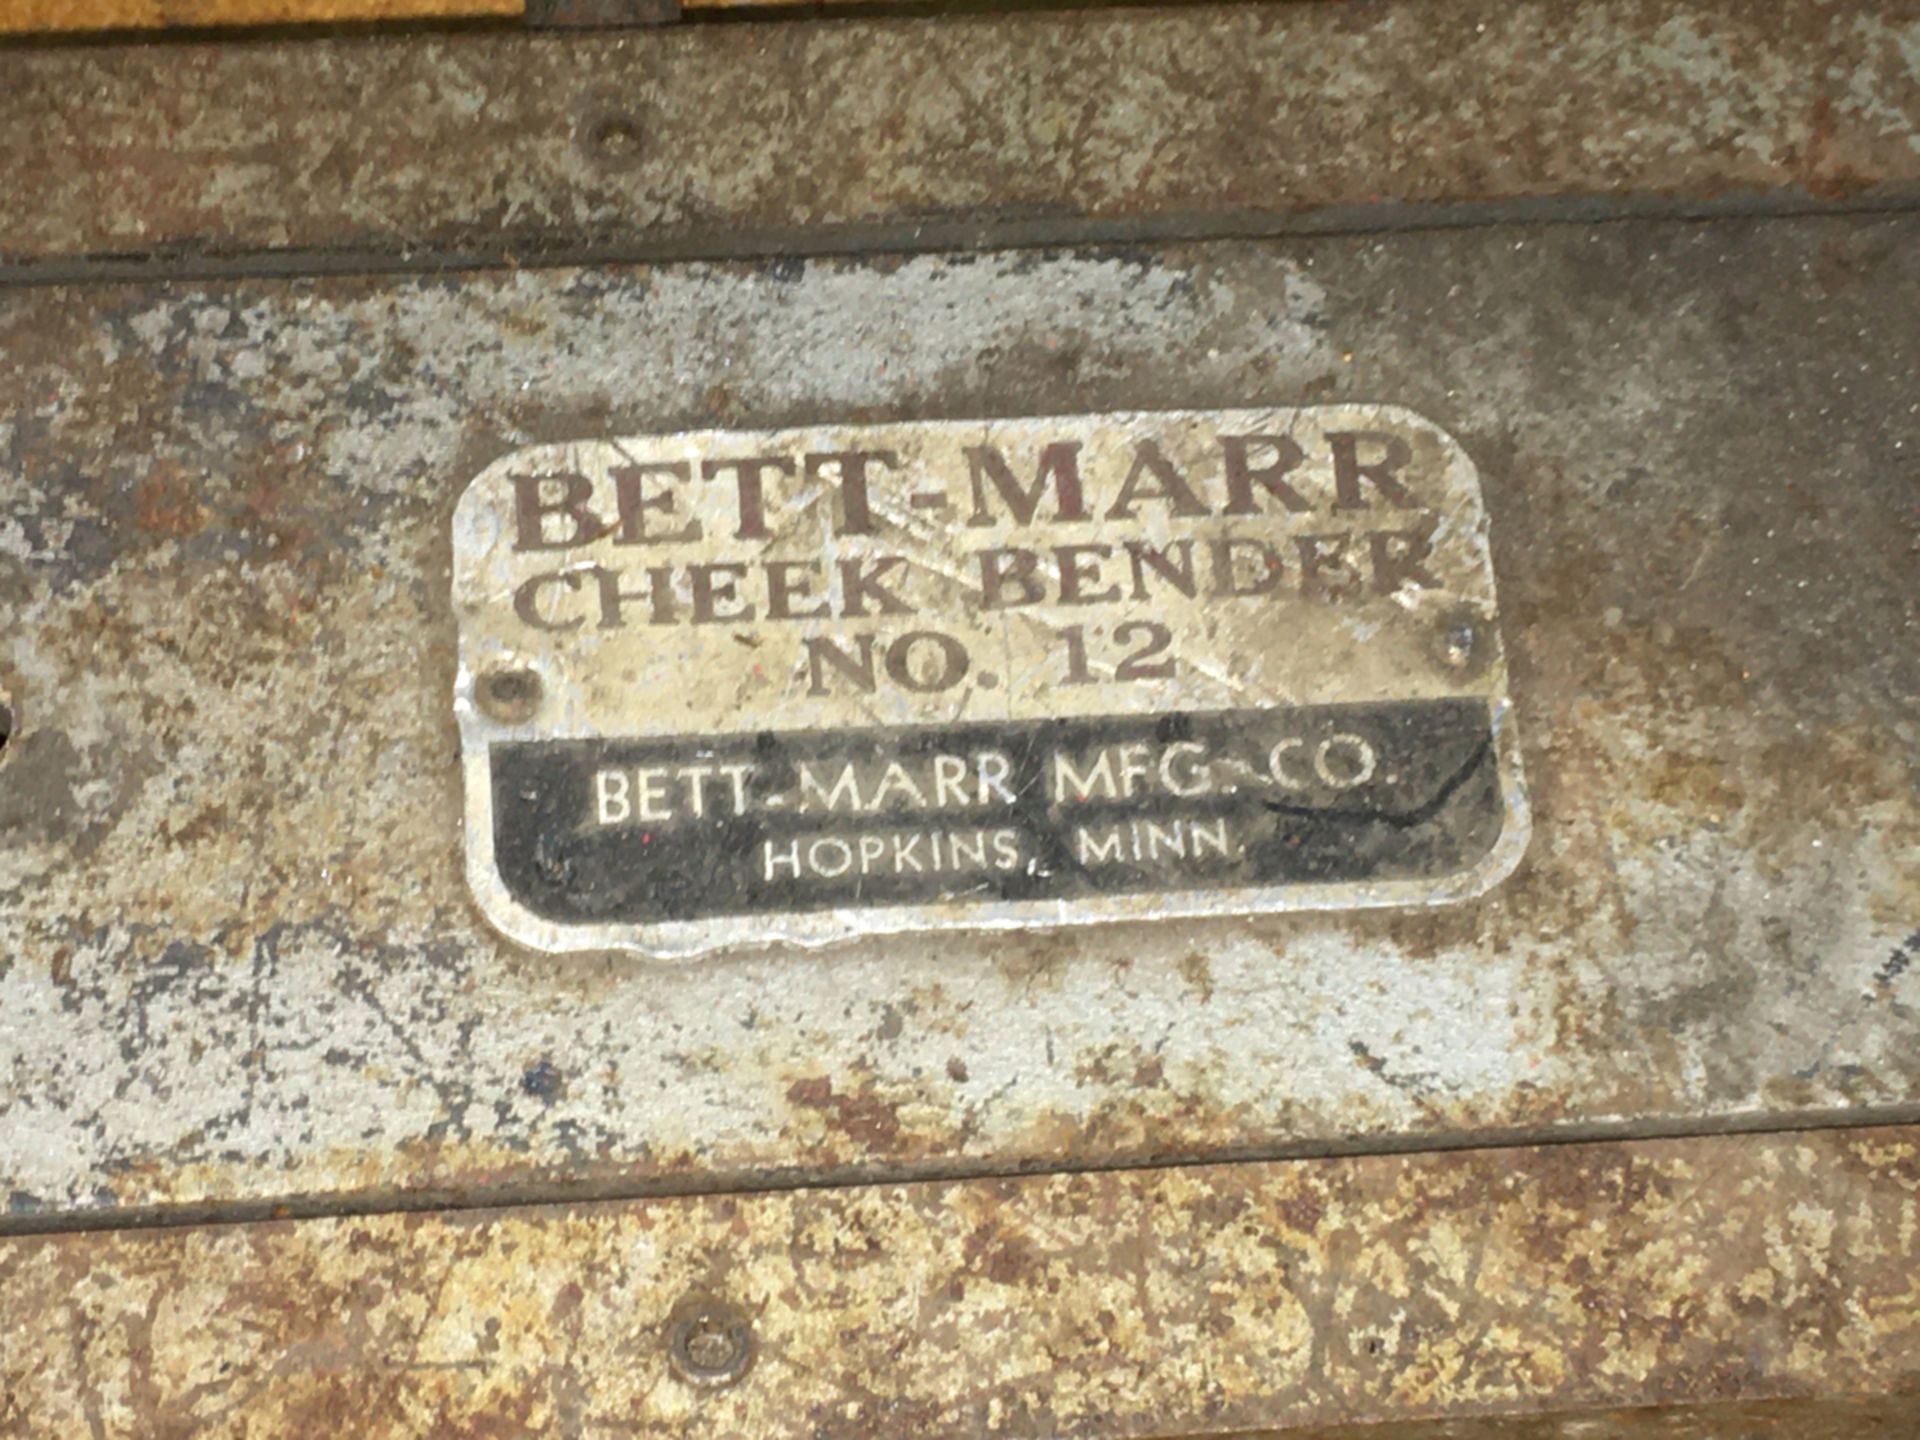 Bett-Marr No.12 Cheek Bender - Image 2 of 4